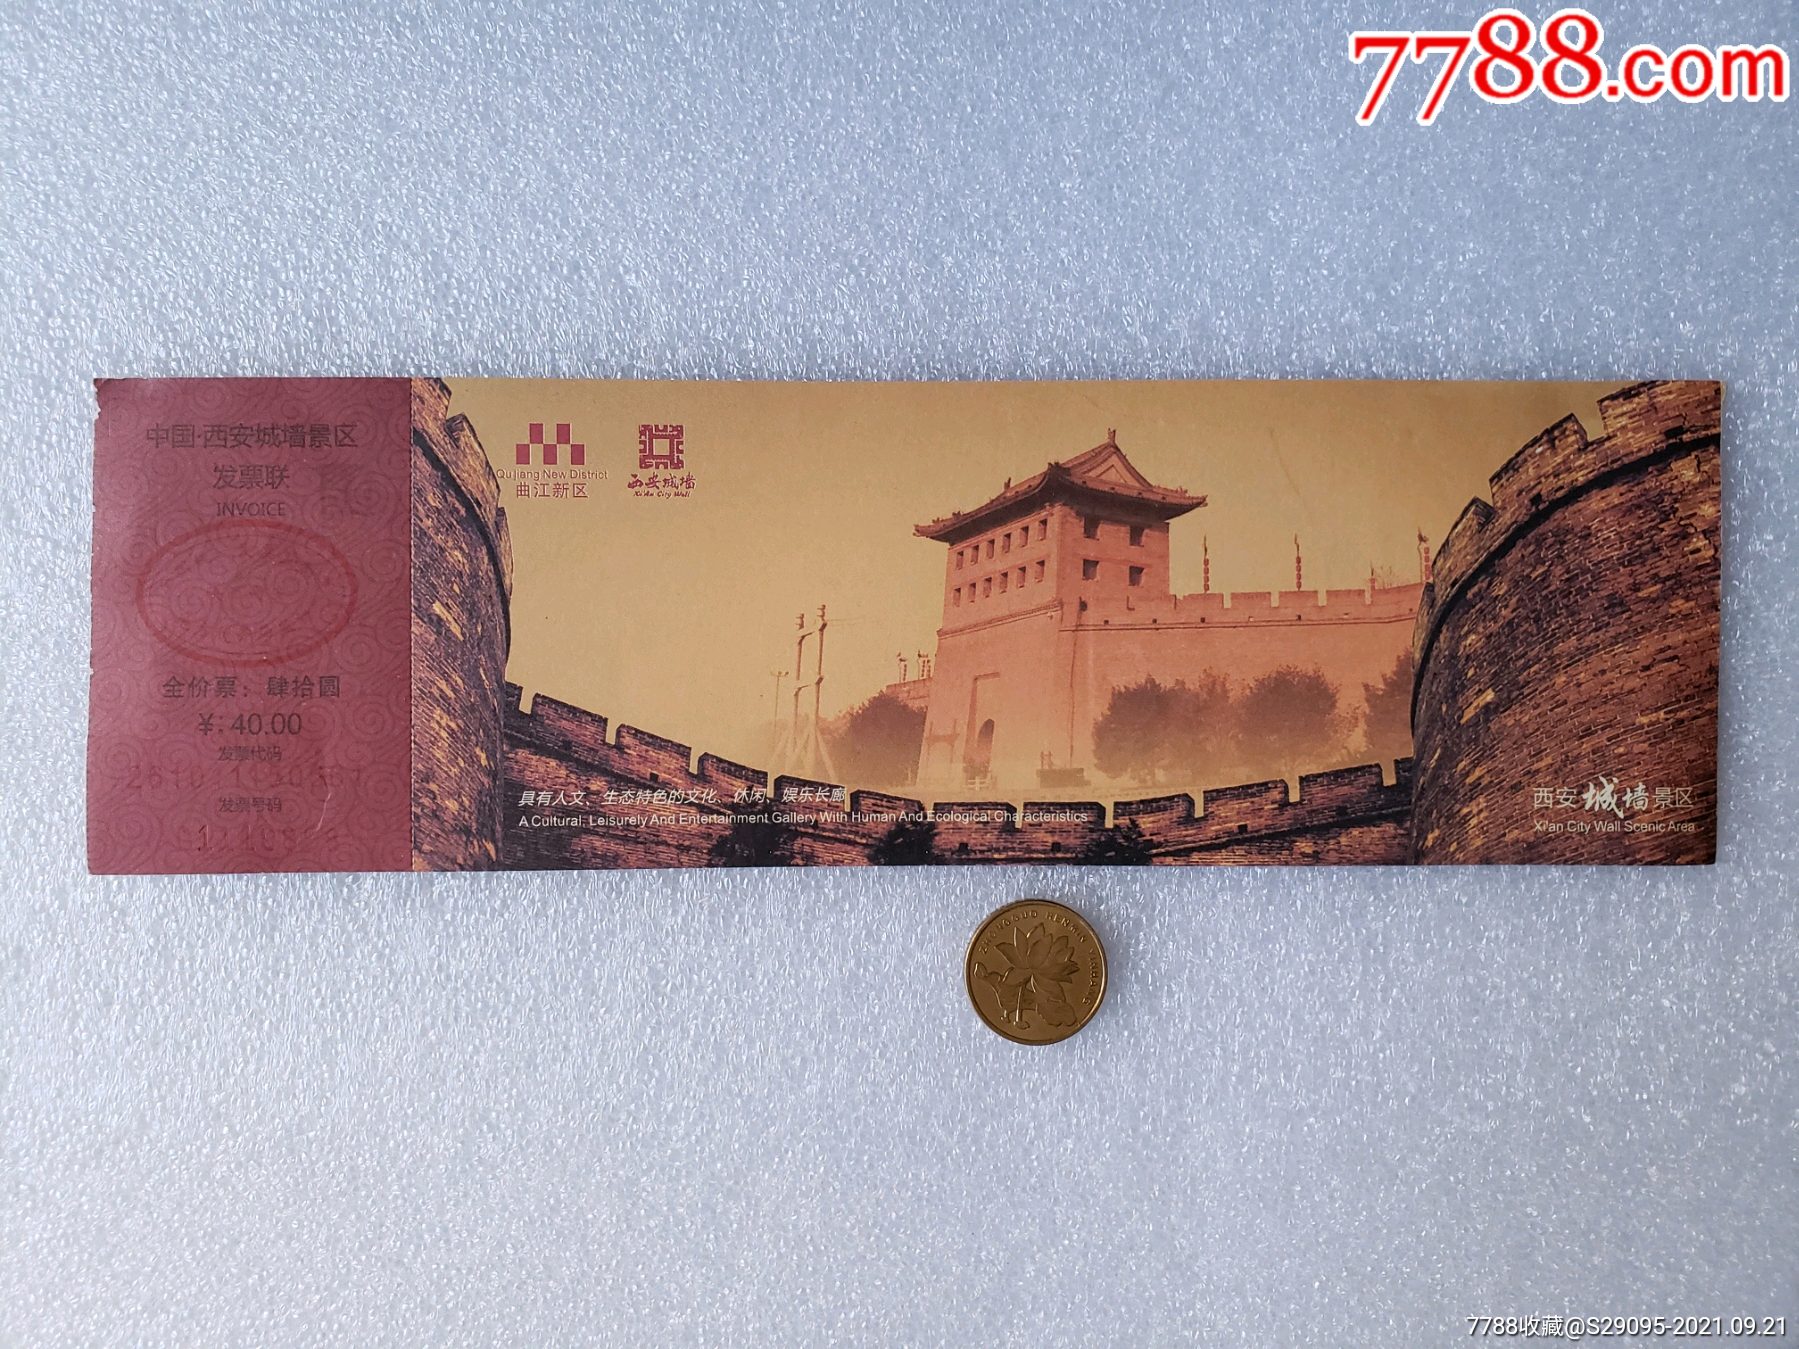 西安城墙门票照片图片